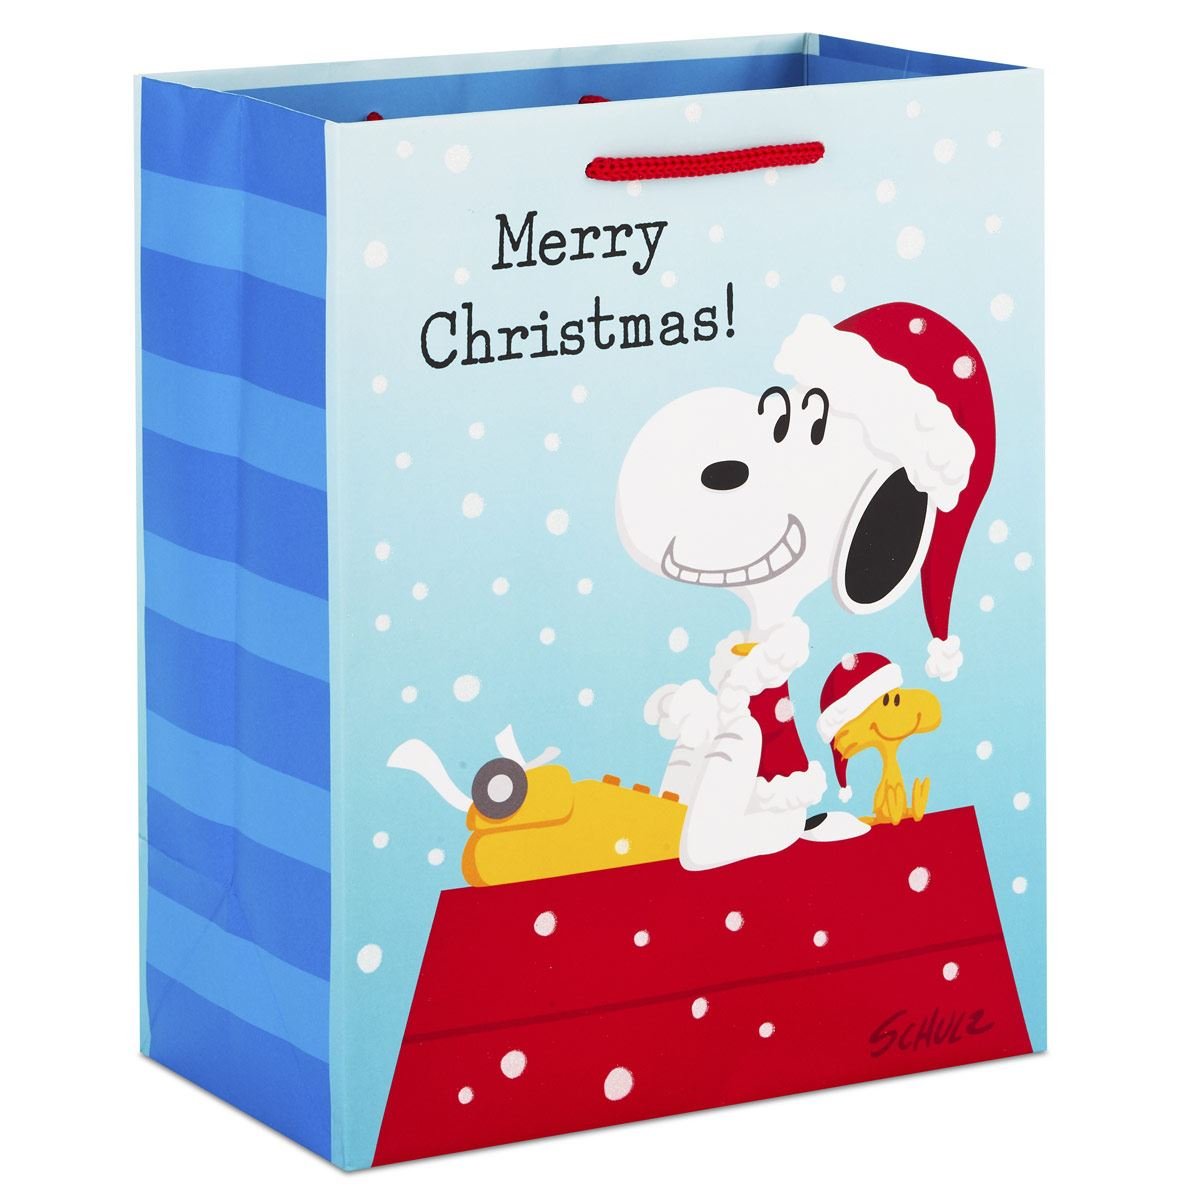 Snoopy en caja de regalo